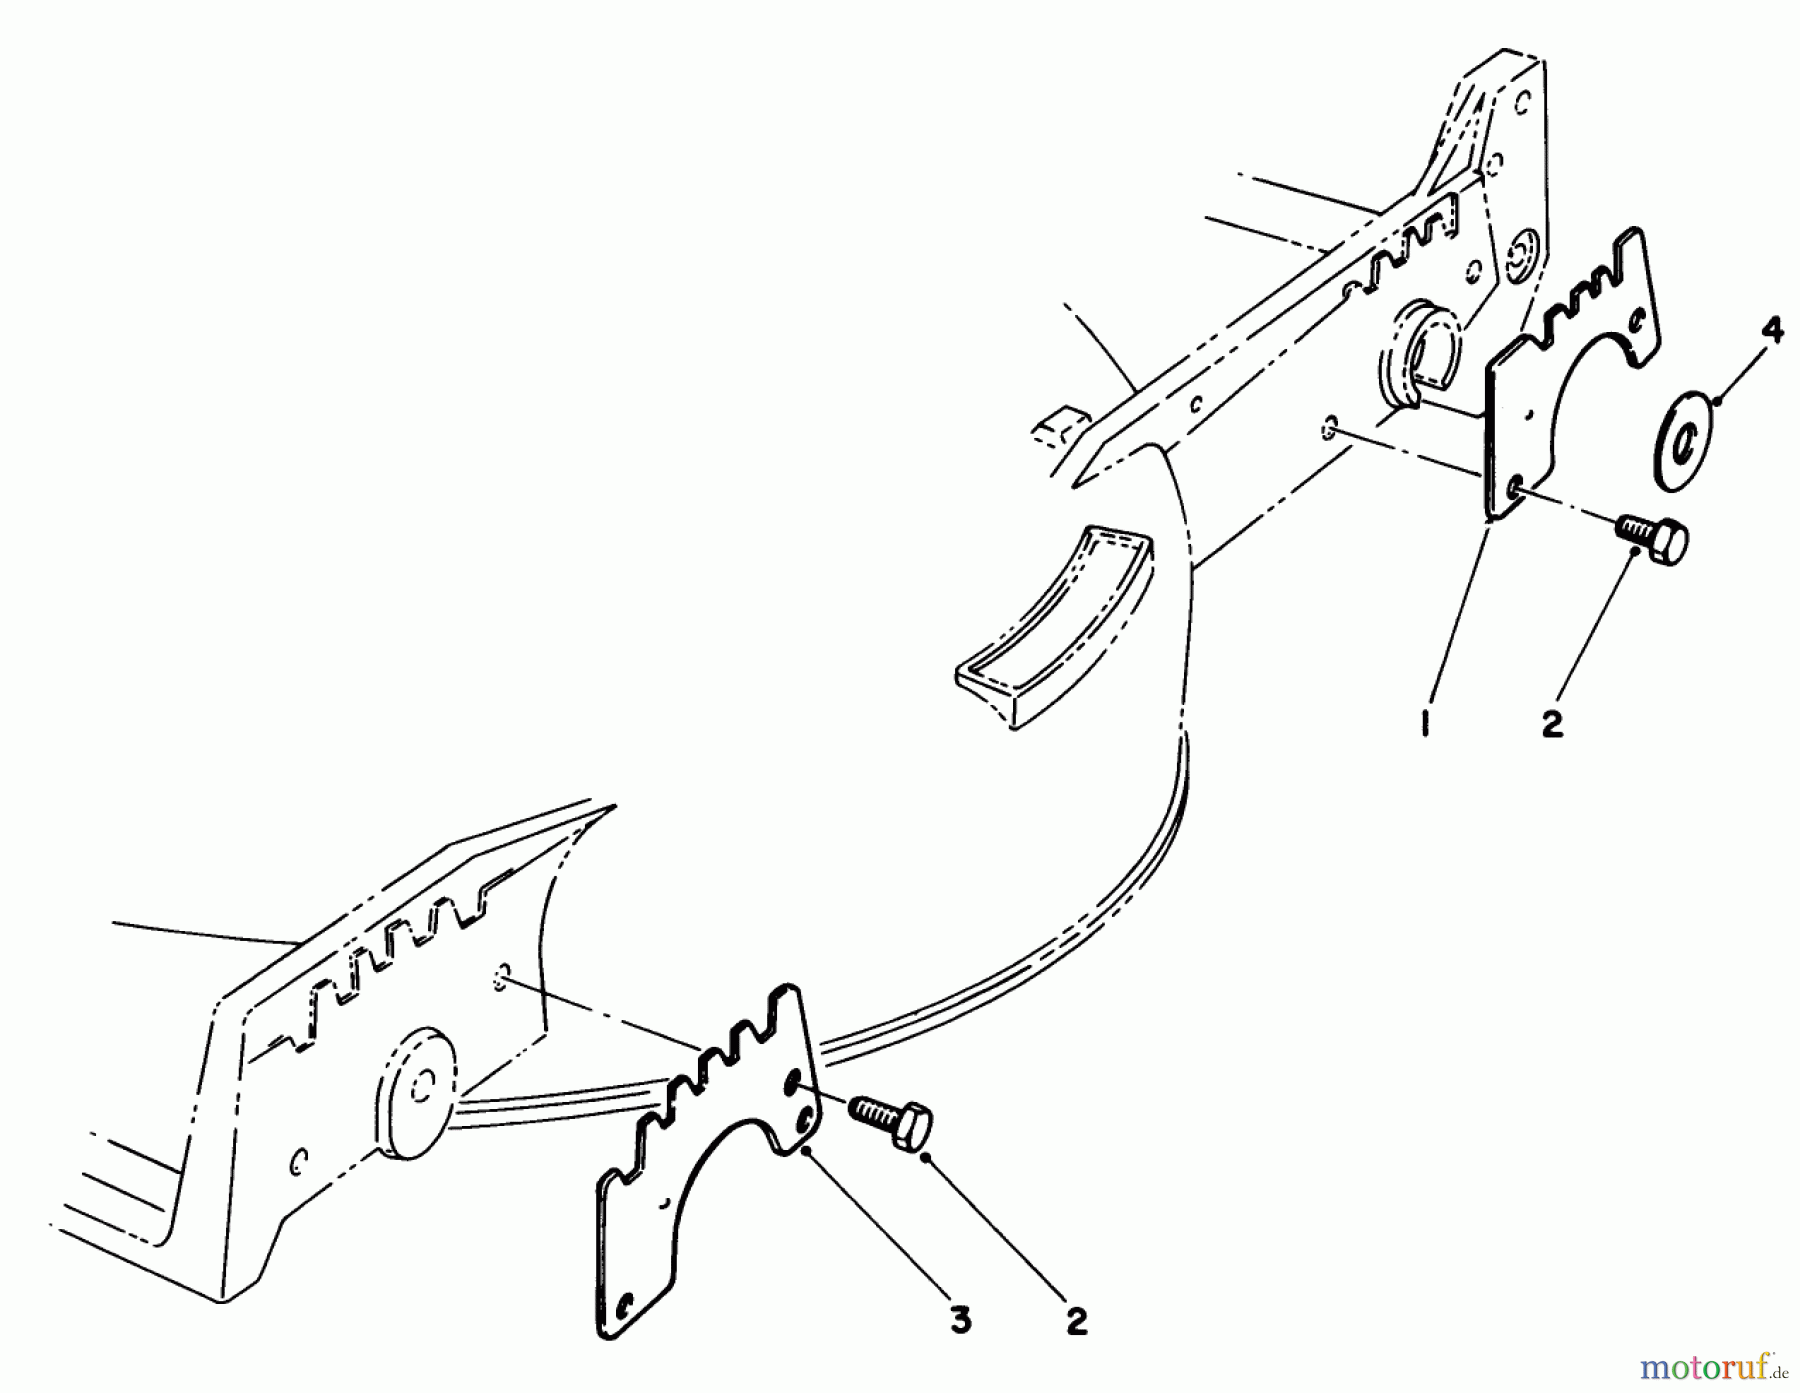  Toro Neu Mowers, Walk-Behind Seite 1 20522C - Toro Lawnmower, 1986 (6000001-6999999) WEAR PLATE KIT NO. 49-4080 (OPTIONAL)